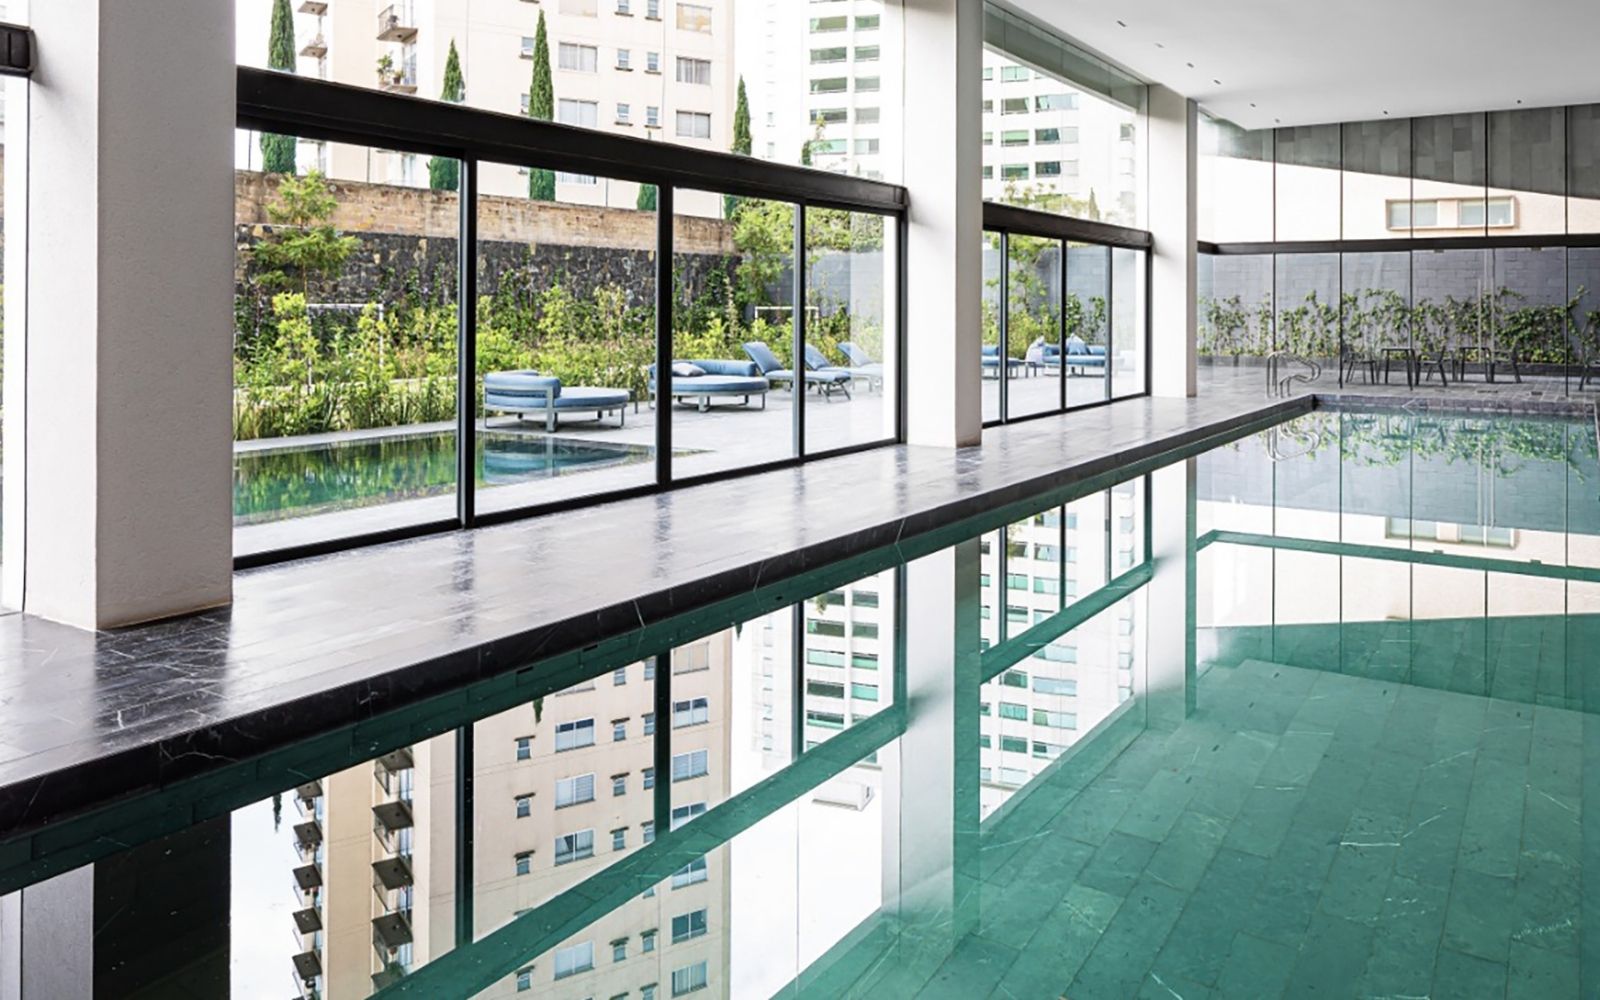 Condominium with pool, central park, pet park, spa, for sale Polanco CDMX